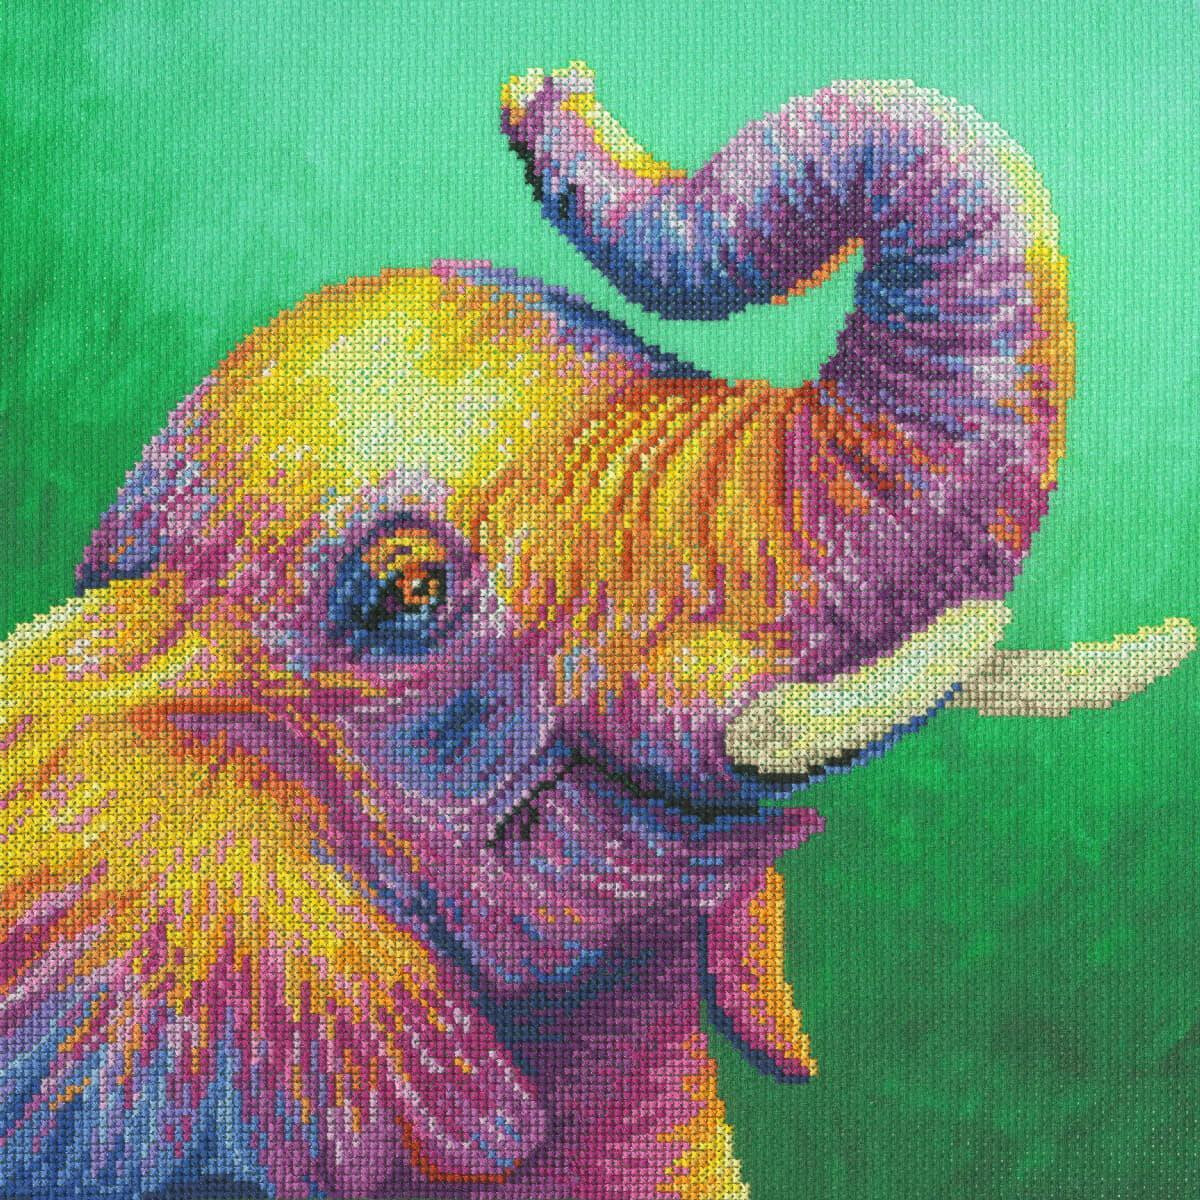 Una colorida imagen pixelada de un elefante con la trompa...